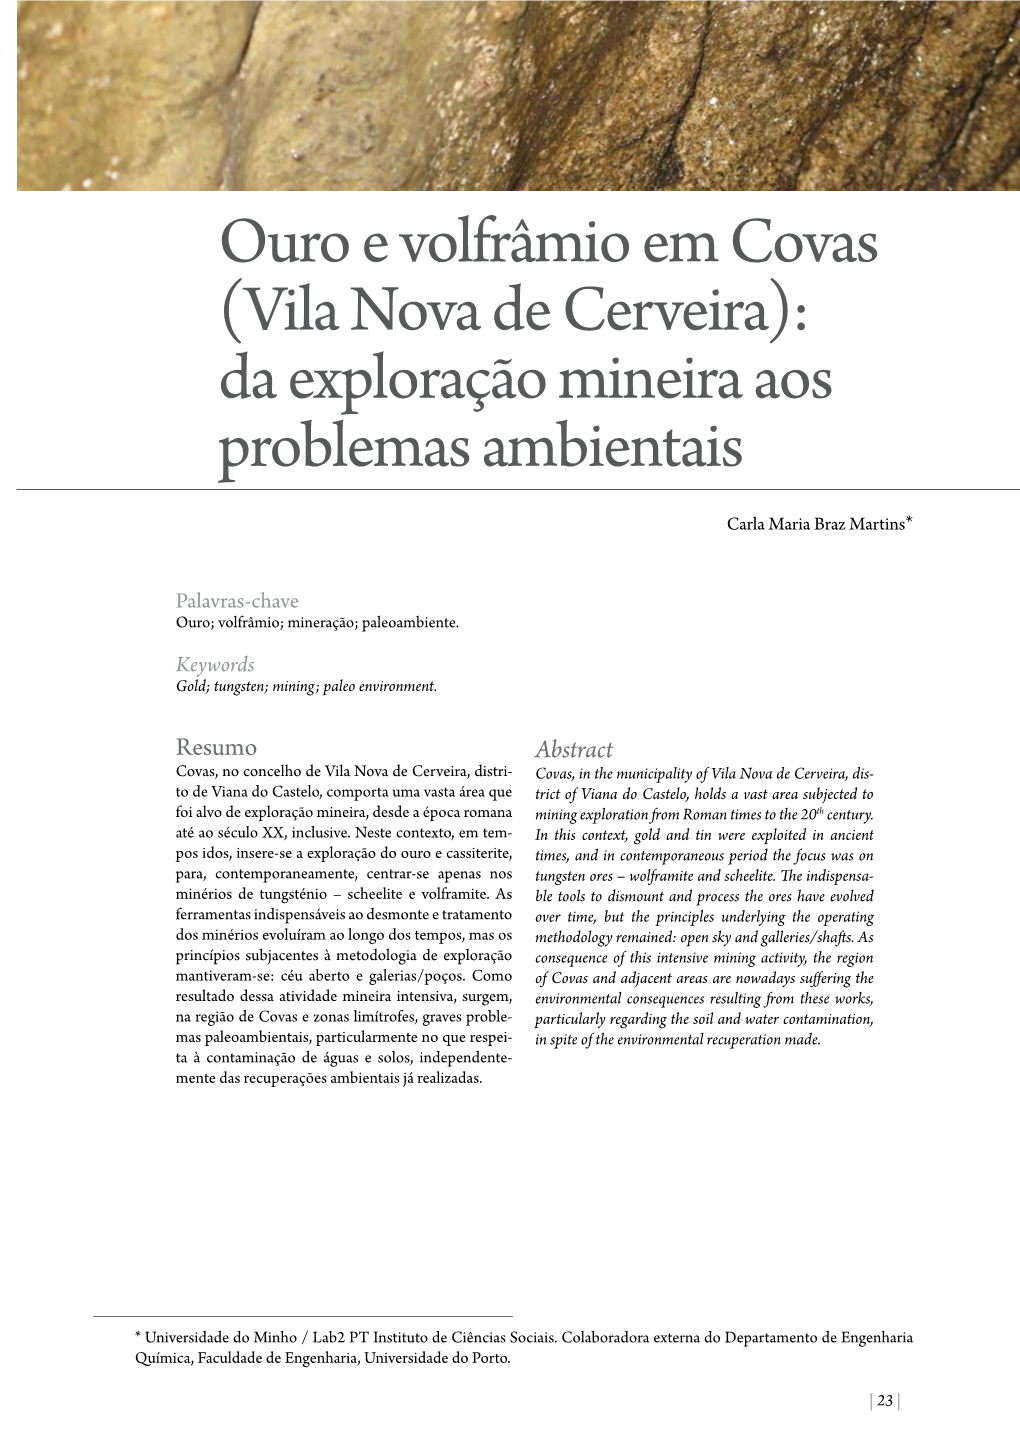 Ouro E Volfrâmio Em Covas (Vila Nova De Cerveira): Da Exploração Mineira Aos Problemas Ambientais